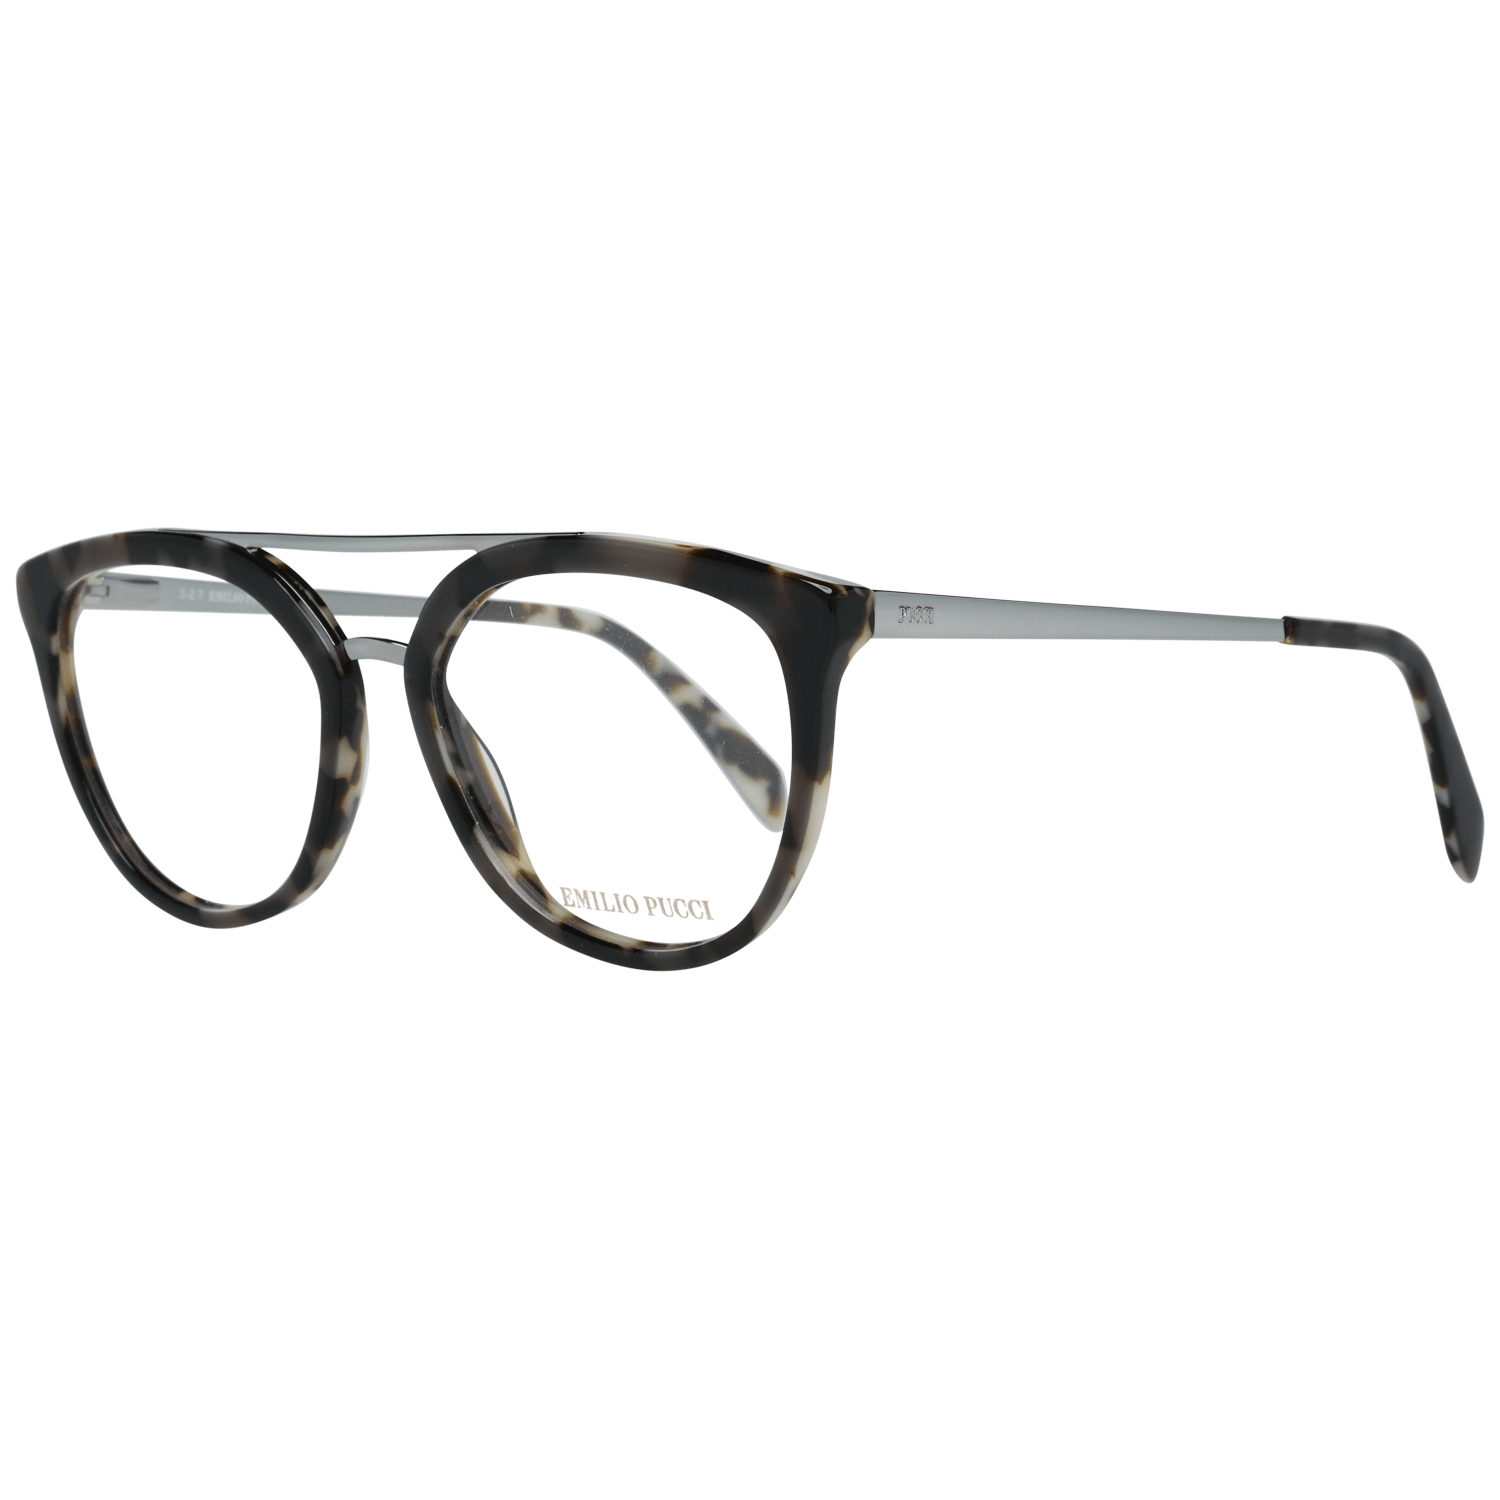 Emilio Pucci Women's Optical Frames Eyewear Brown EP5072 52020